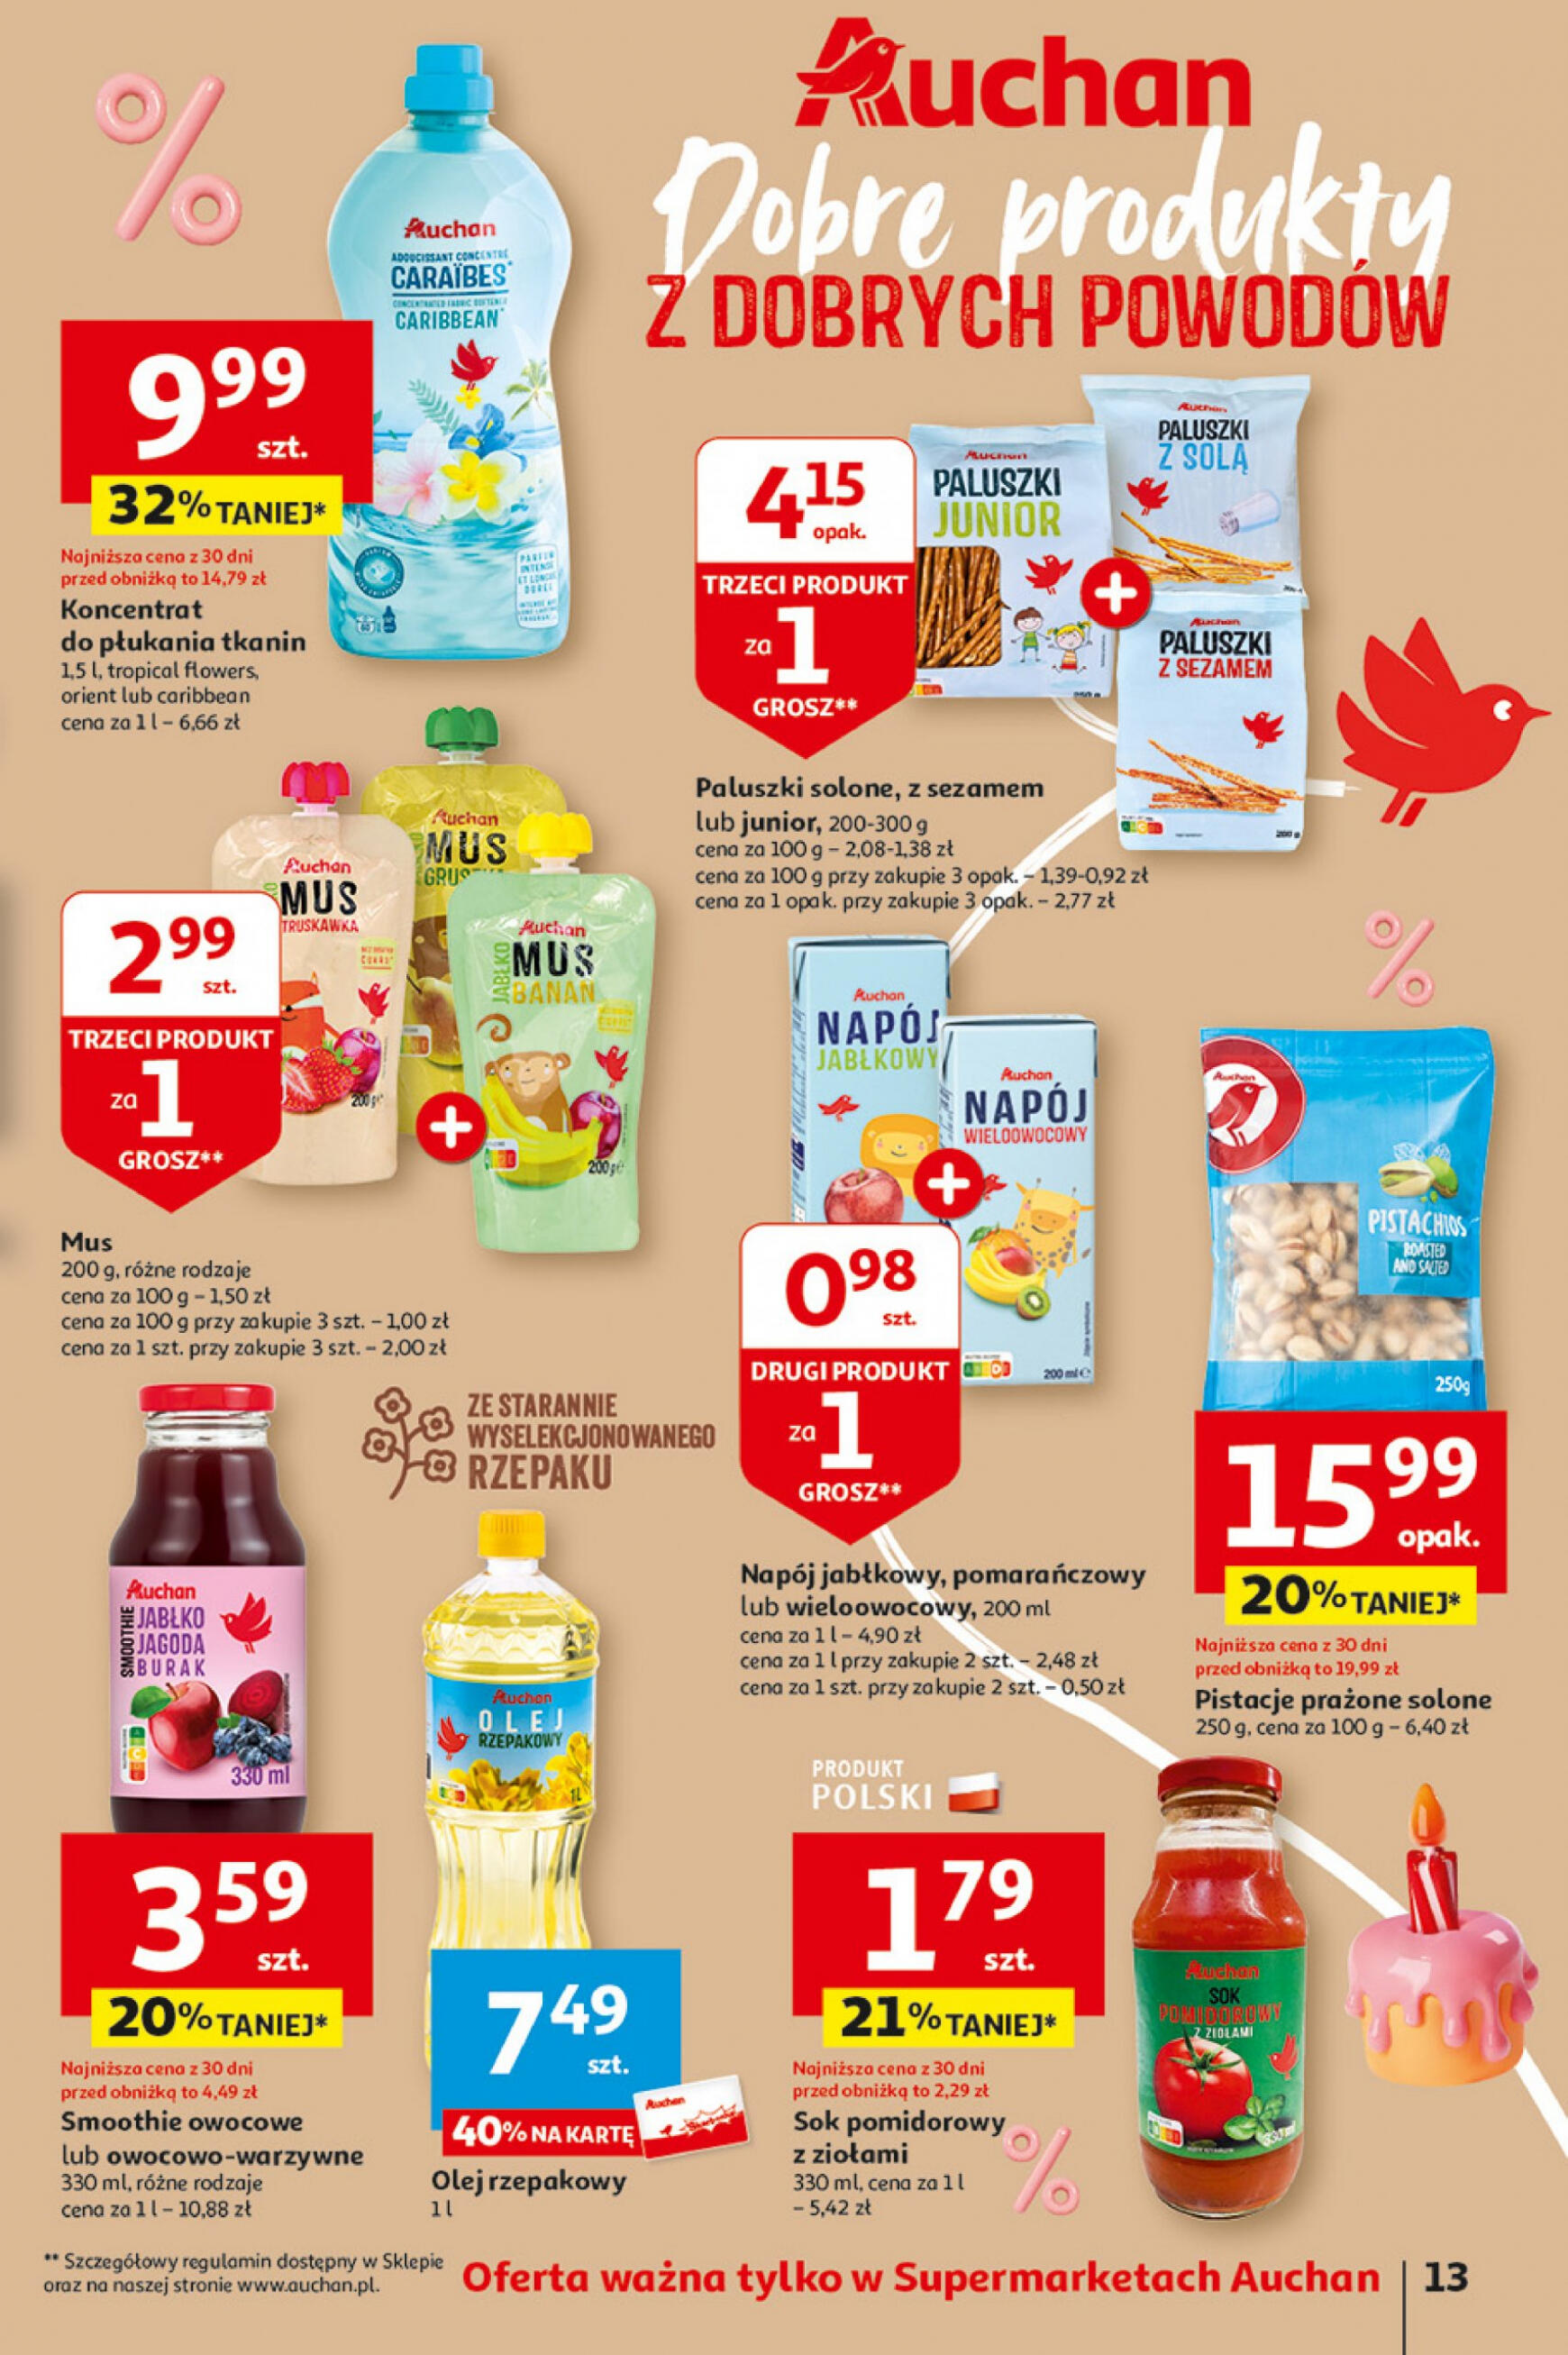 auchan - Supermarket Auchan - Gazetka Jeszcze taniej na urodziny gazetka aktualna ważna od 02.05. - 08.05. - page: 13